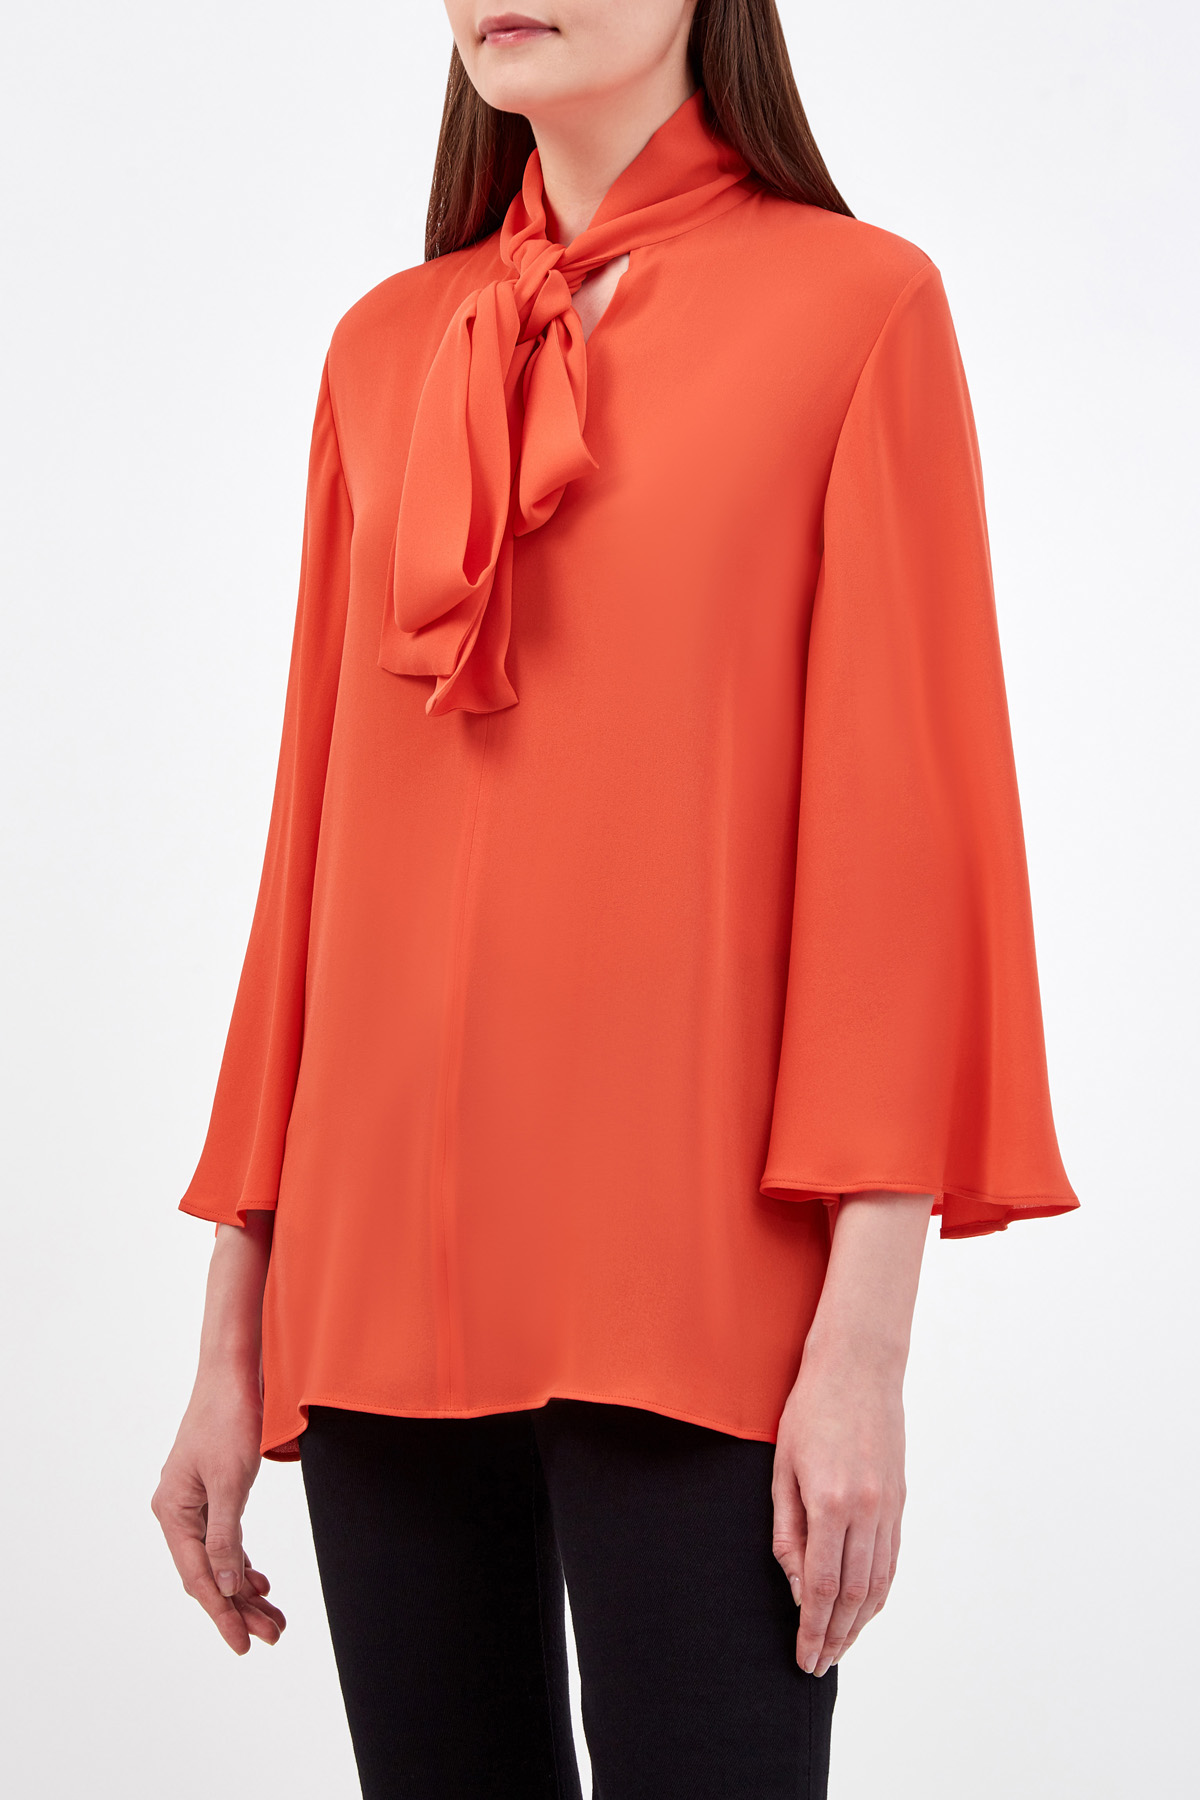 Шелковая блуза из коллекции Neonature с рукавами-клеш VALENTINO, цвет оранжевый, размер 40;42;44;38 - фото 3